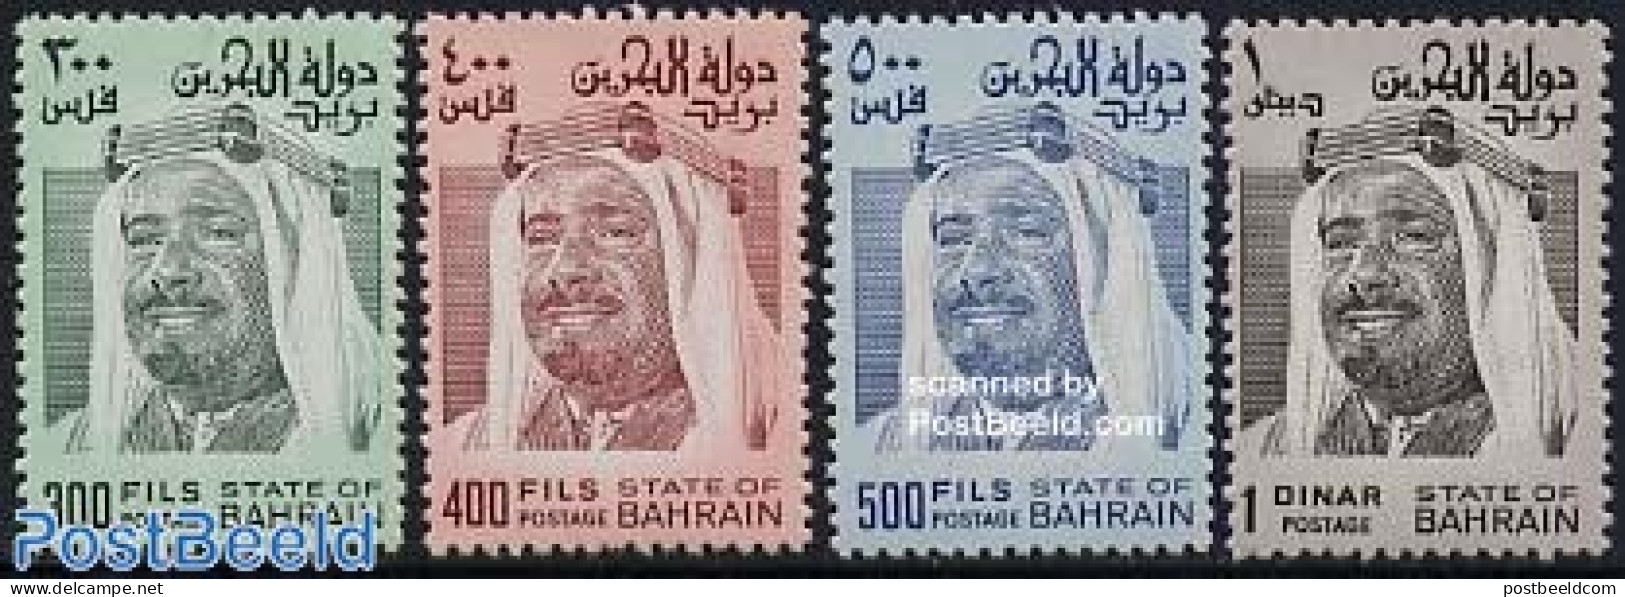 Bahrain 1976 Definitives 4v, Mint NH - Bahrain (1965-...)